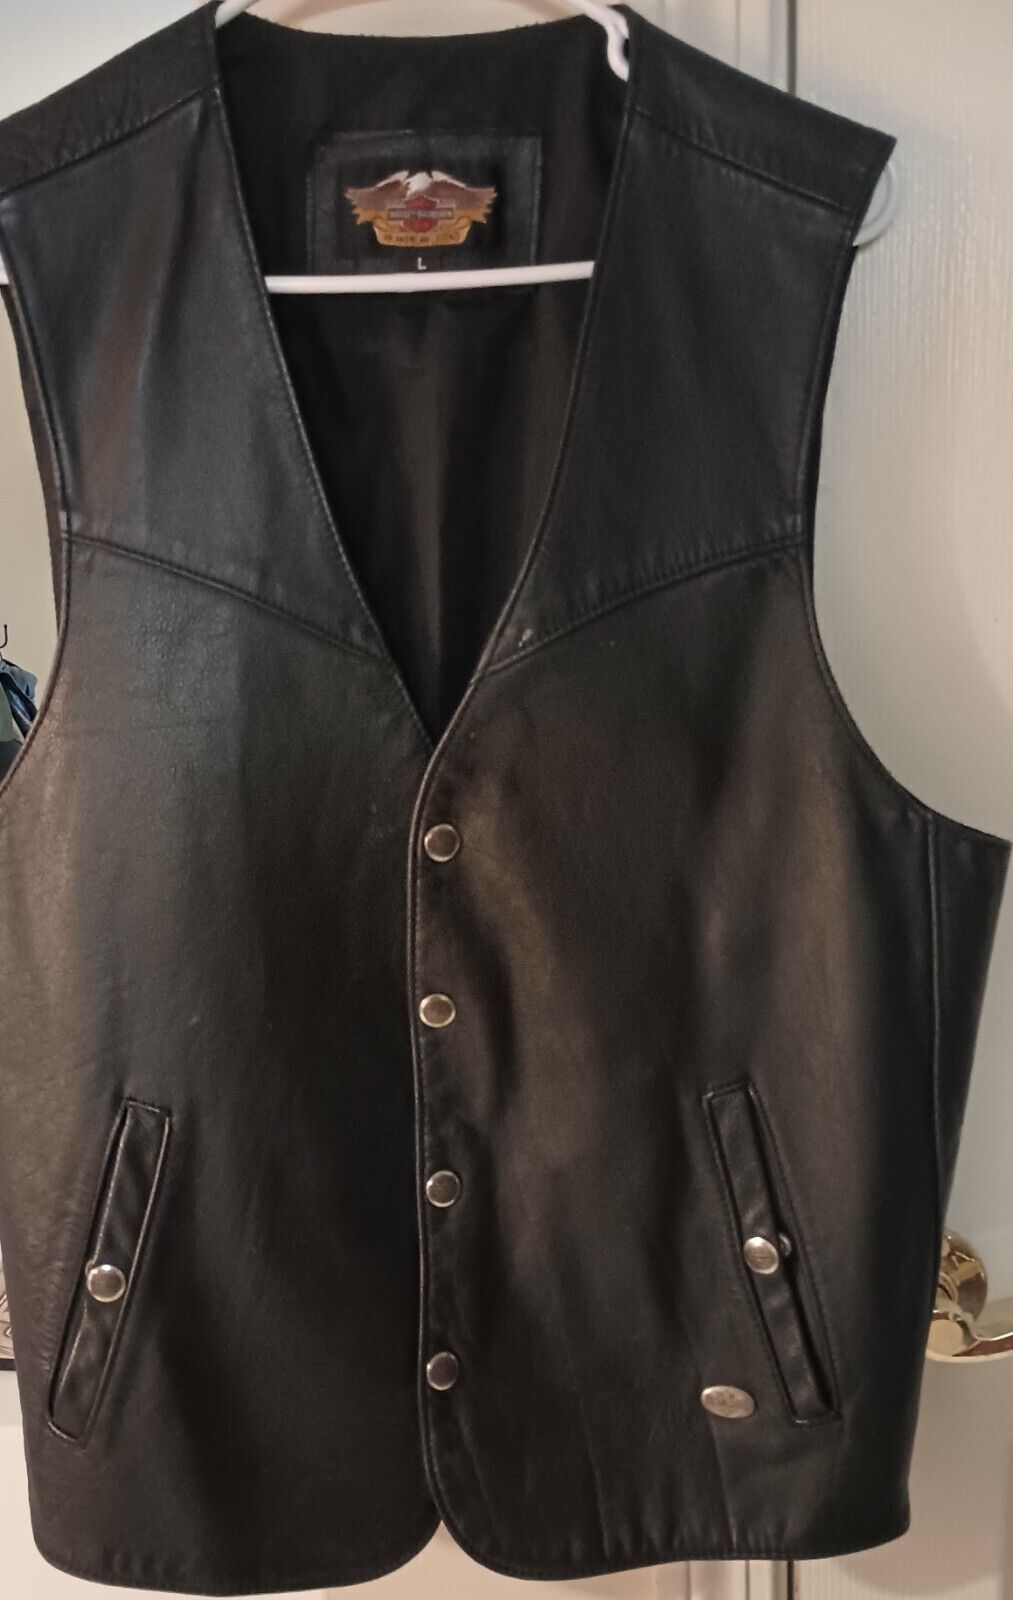 Vintage Harley Davidson Black leather Vest Large